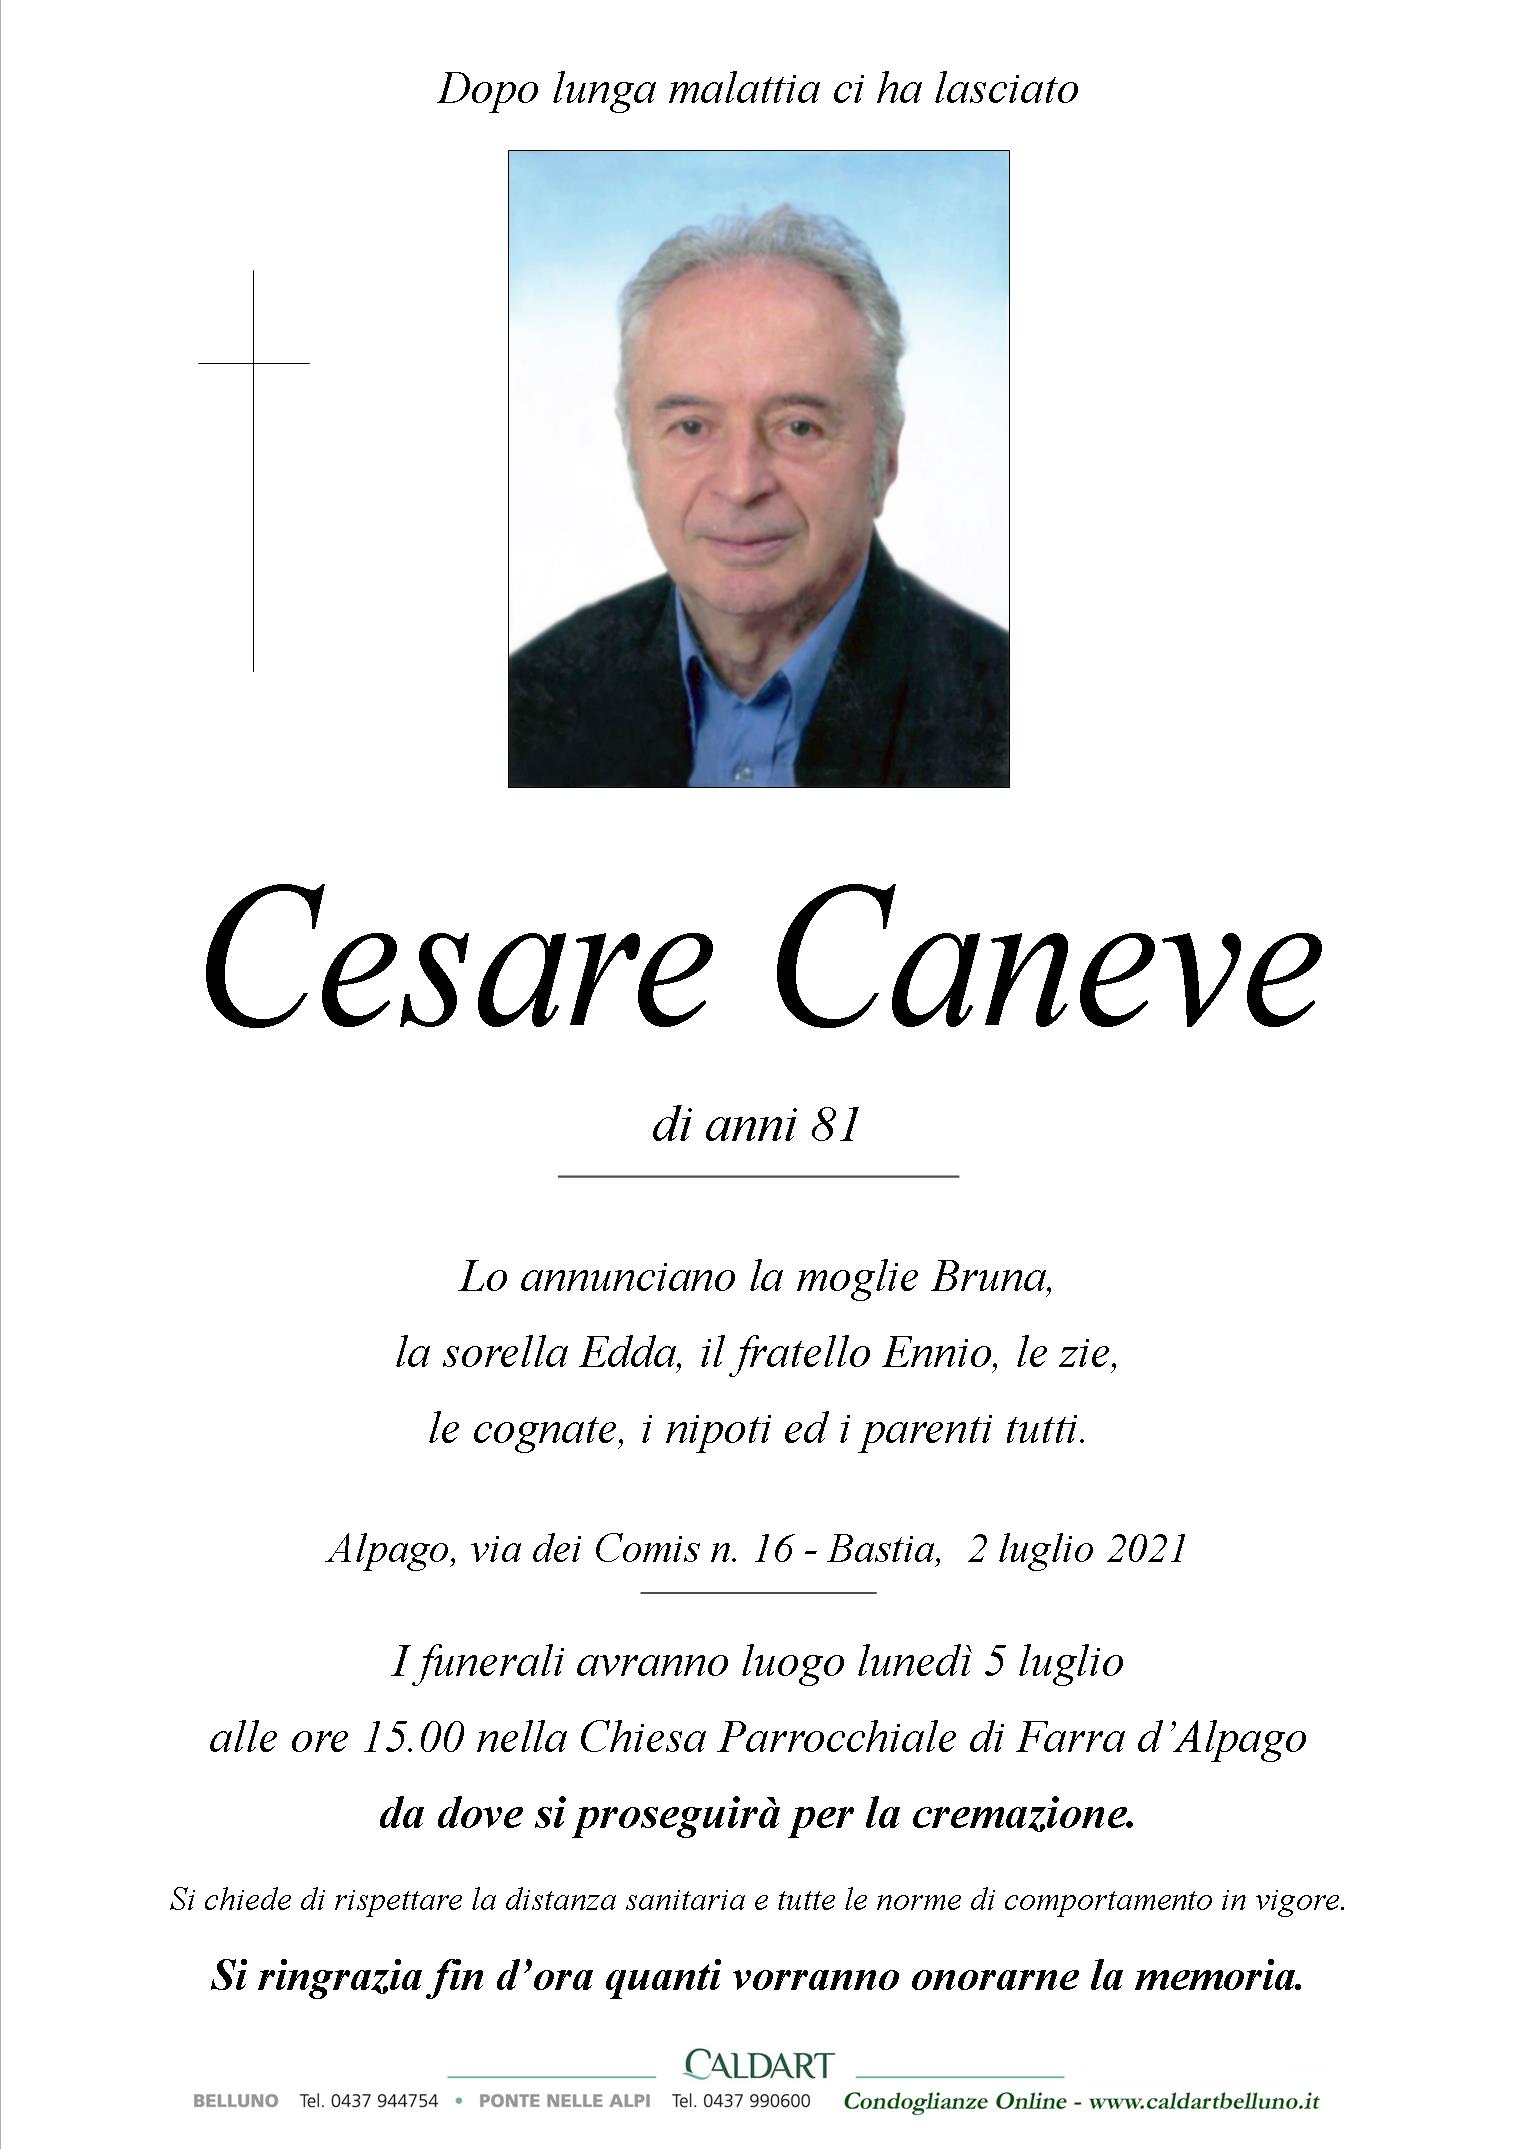 Caneve Cesare